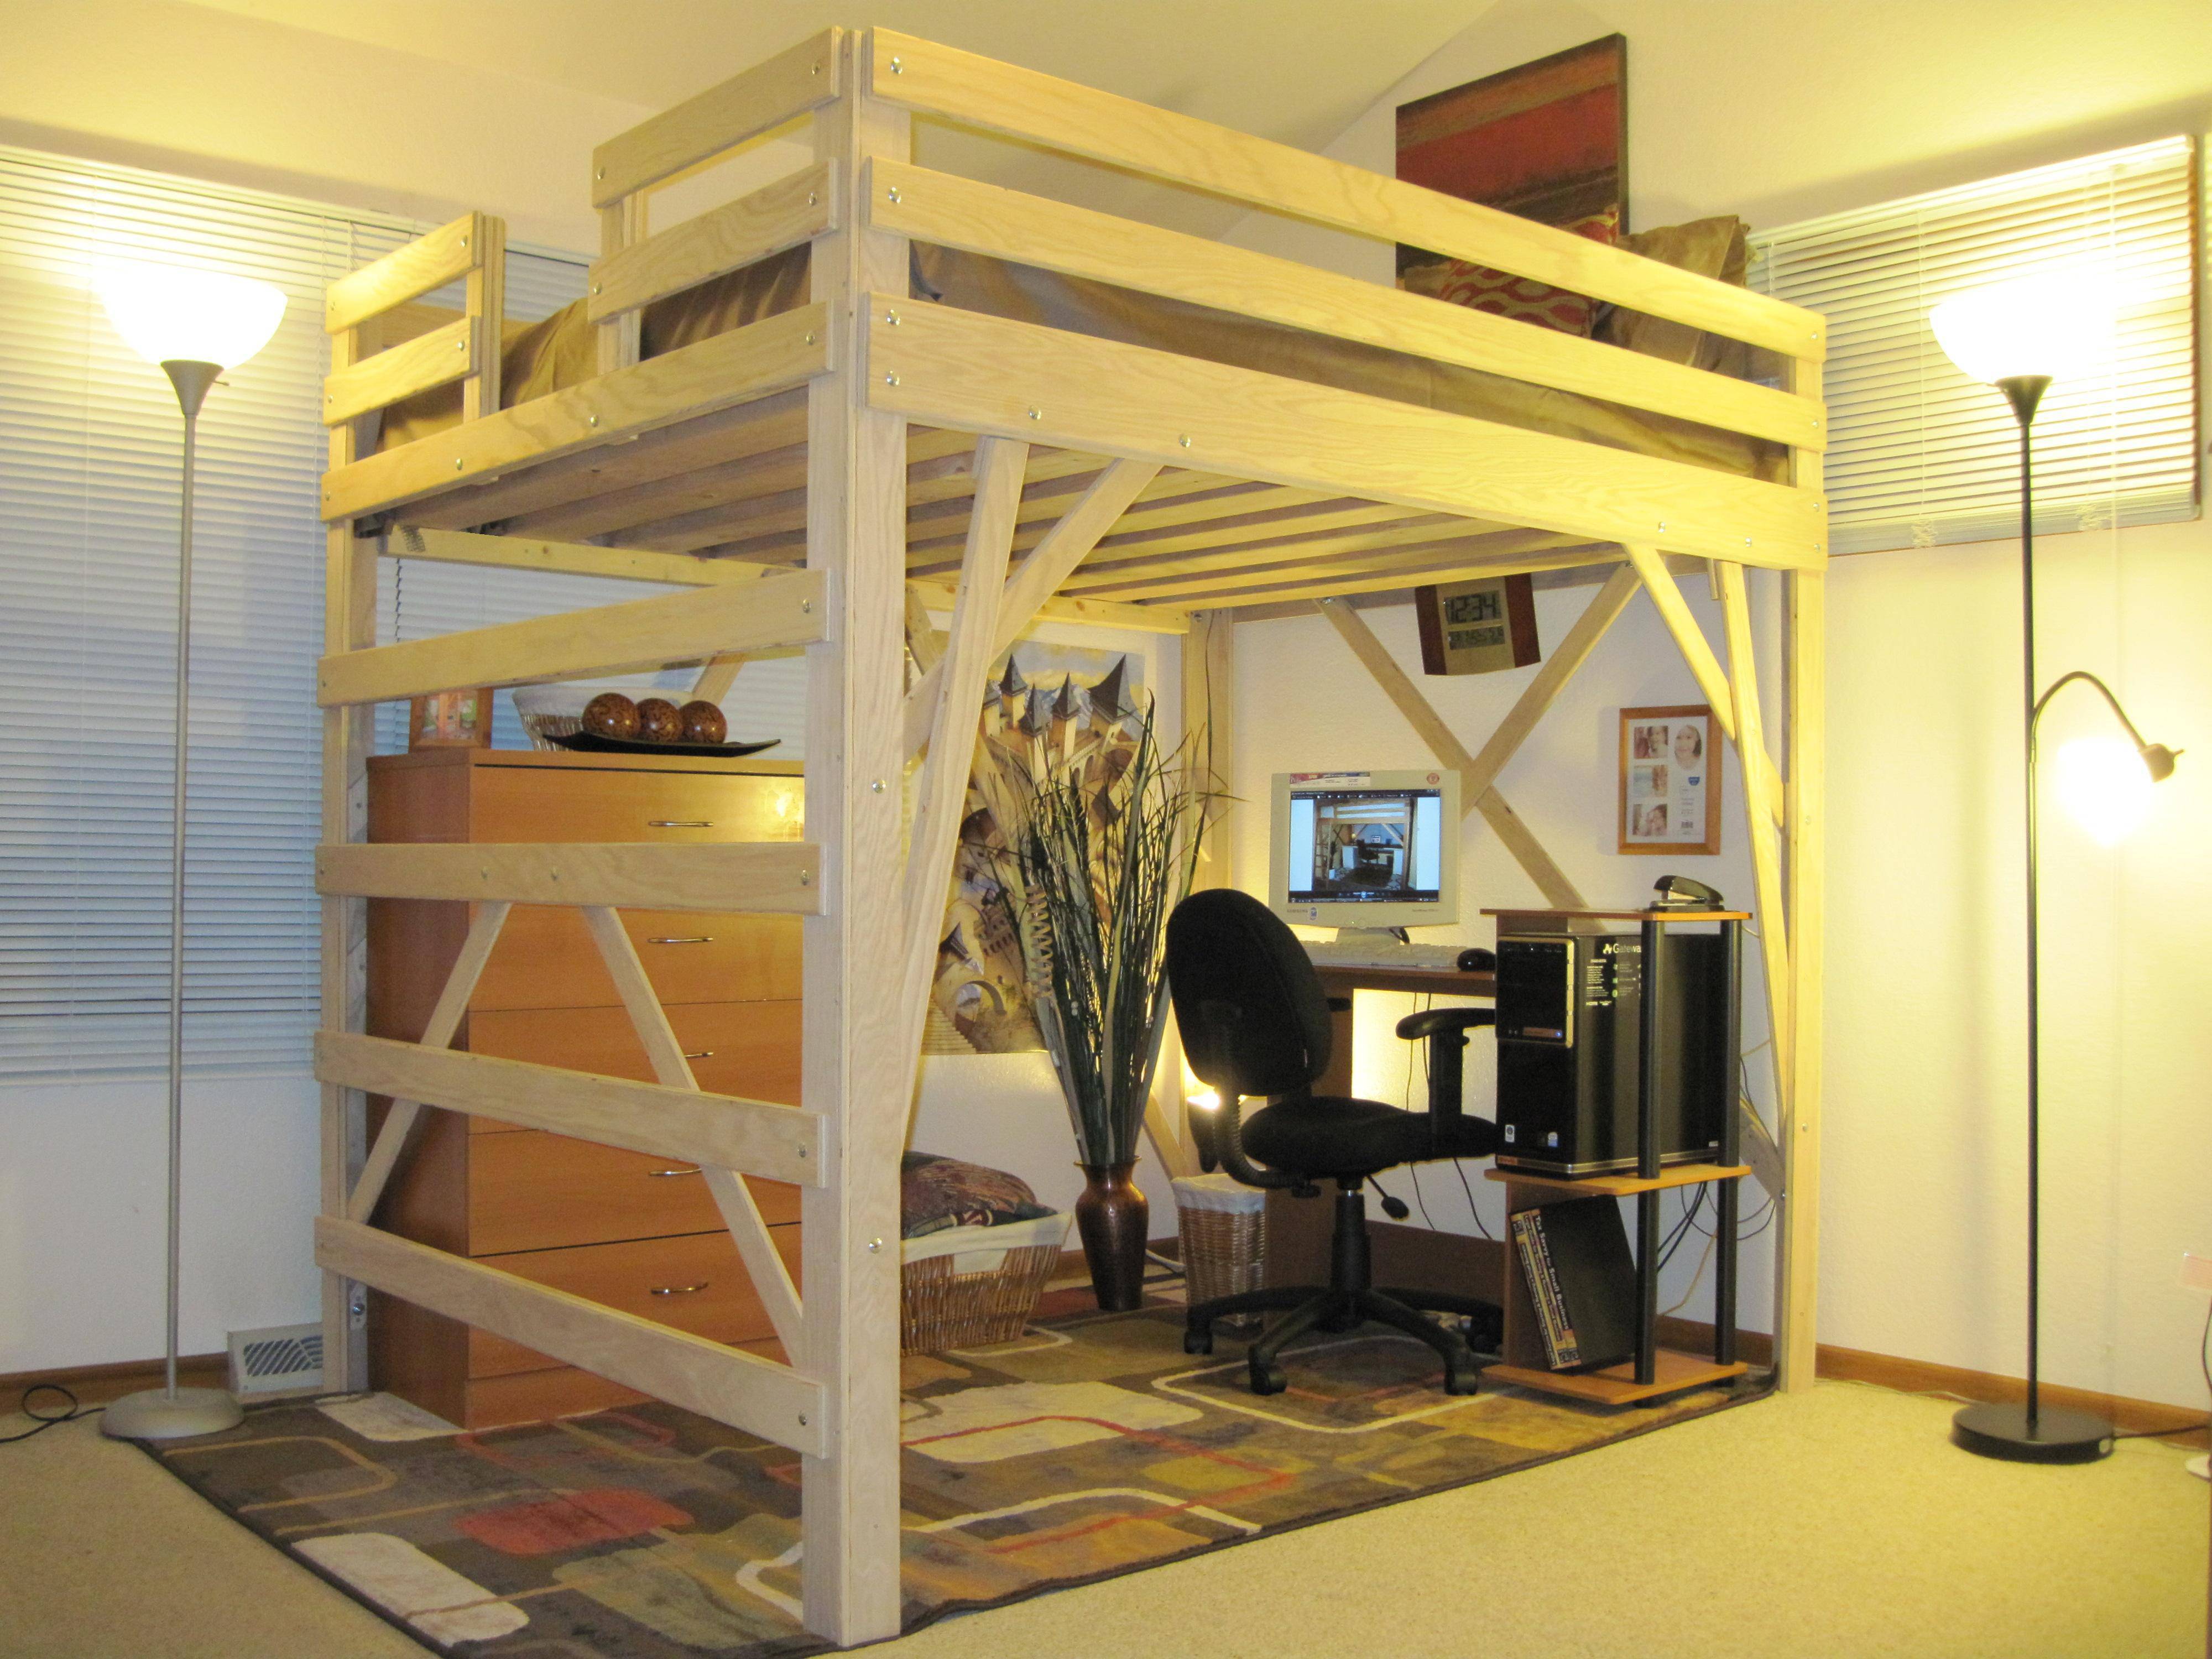 wwe bedroom wallpaper,bunk bed,bed,furniture,room,building